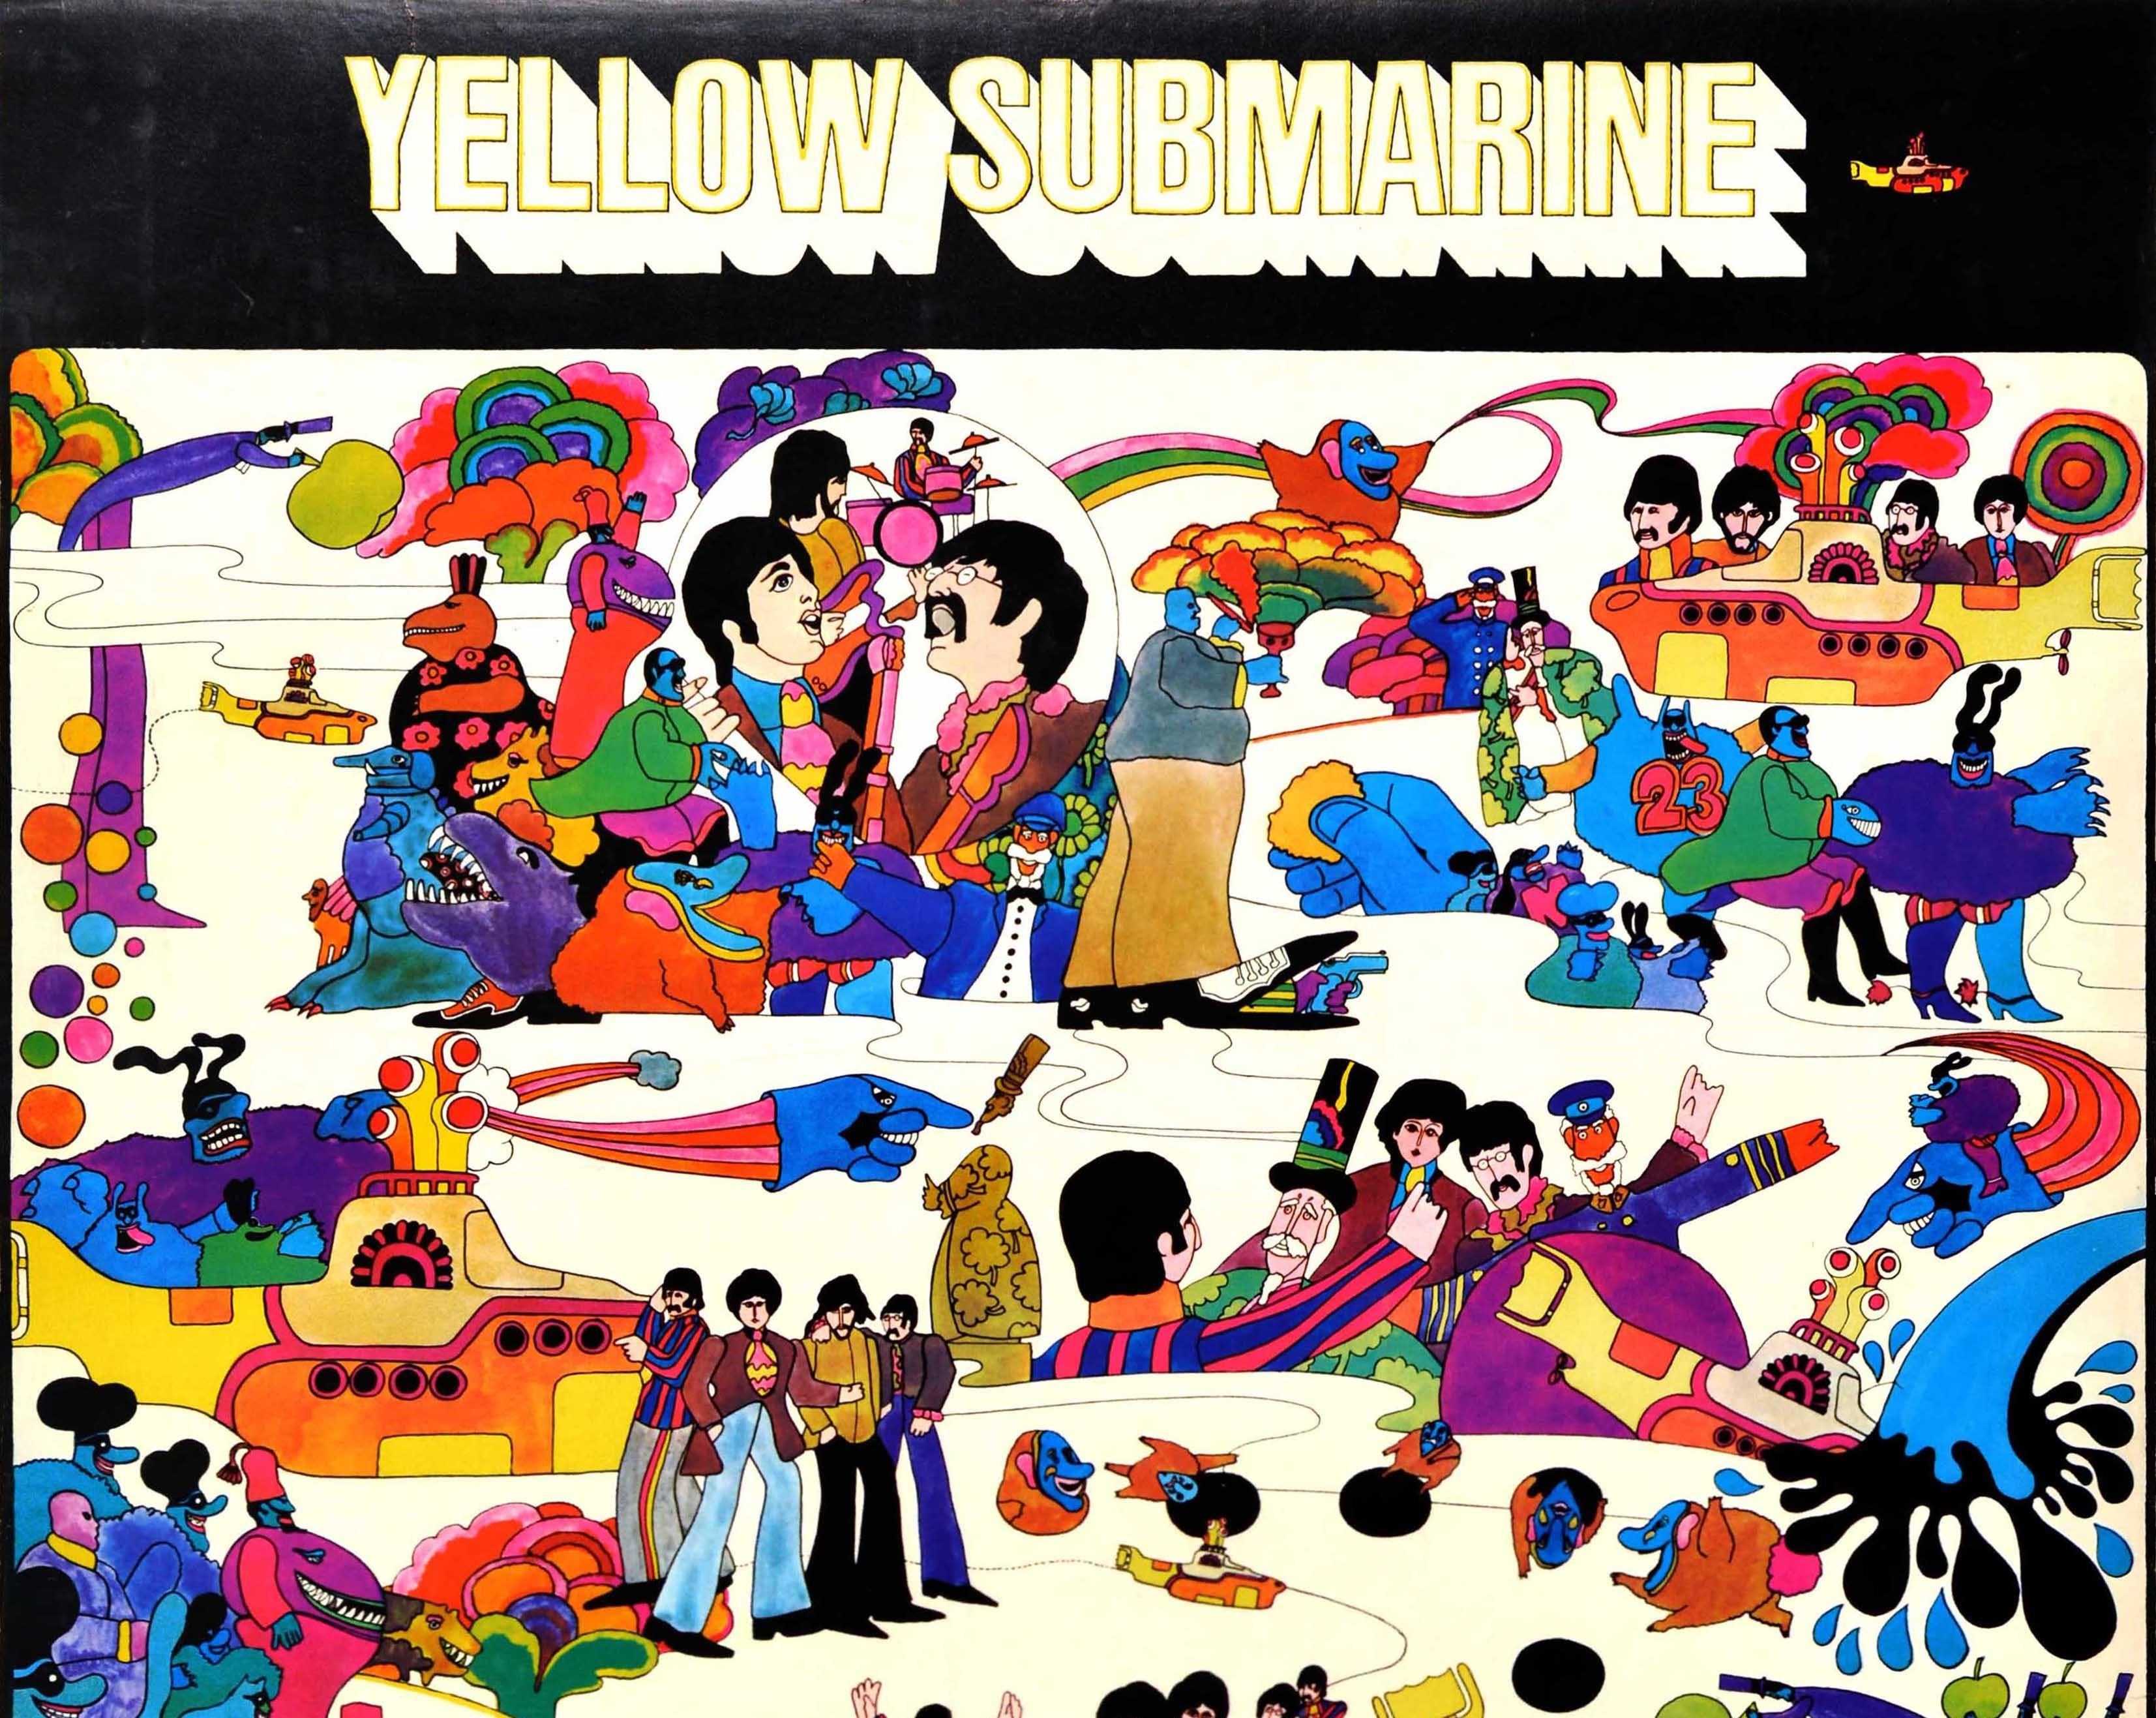 Affiche originale de film musical vintage publiée par Hallmark pour le film d'animation Yellow Submarine avec le Sgt. Pepper's Lonely Hearts Club Band, basé sur une chanson de John Lennon et Paul McCartney et mettant en vedette la musique des